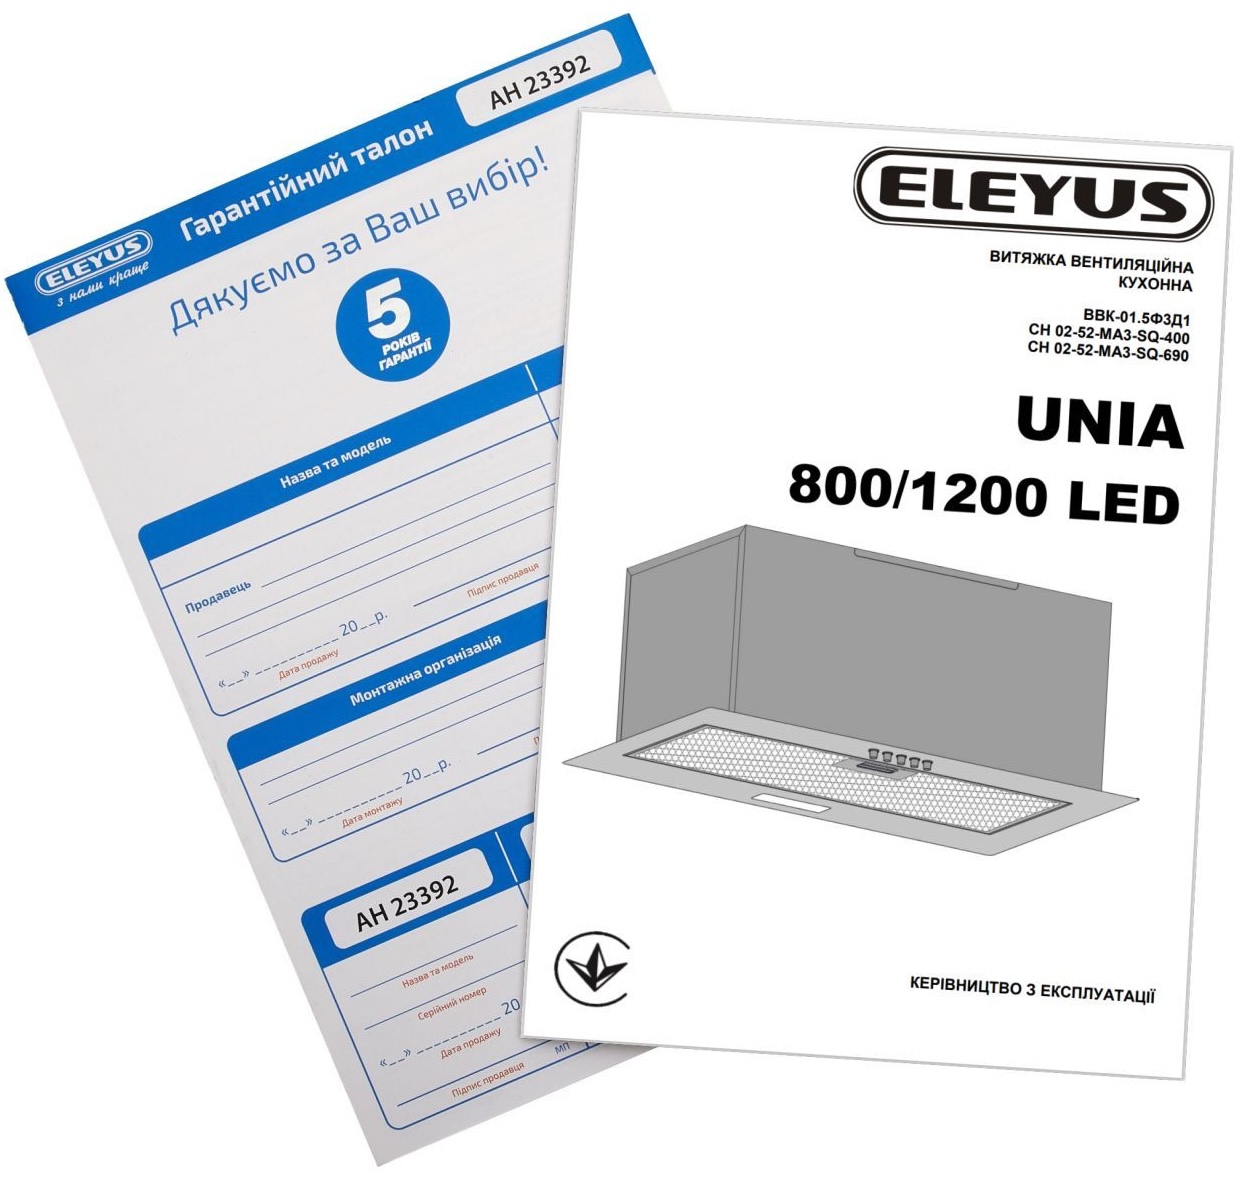 Кухонная вытяжка Eleyus Unia 800 LED 52 WH обзор - фото 11